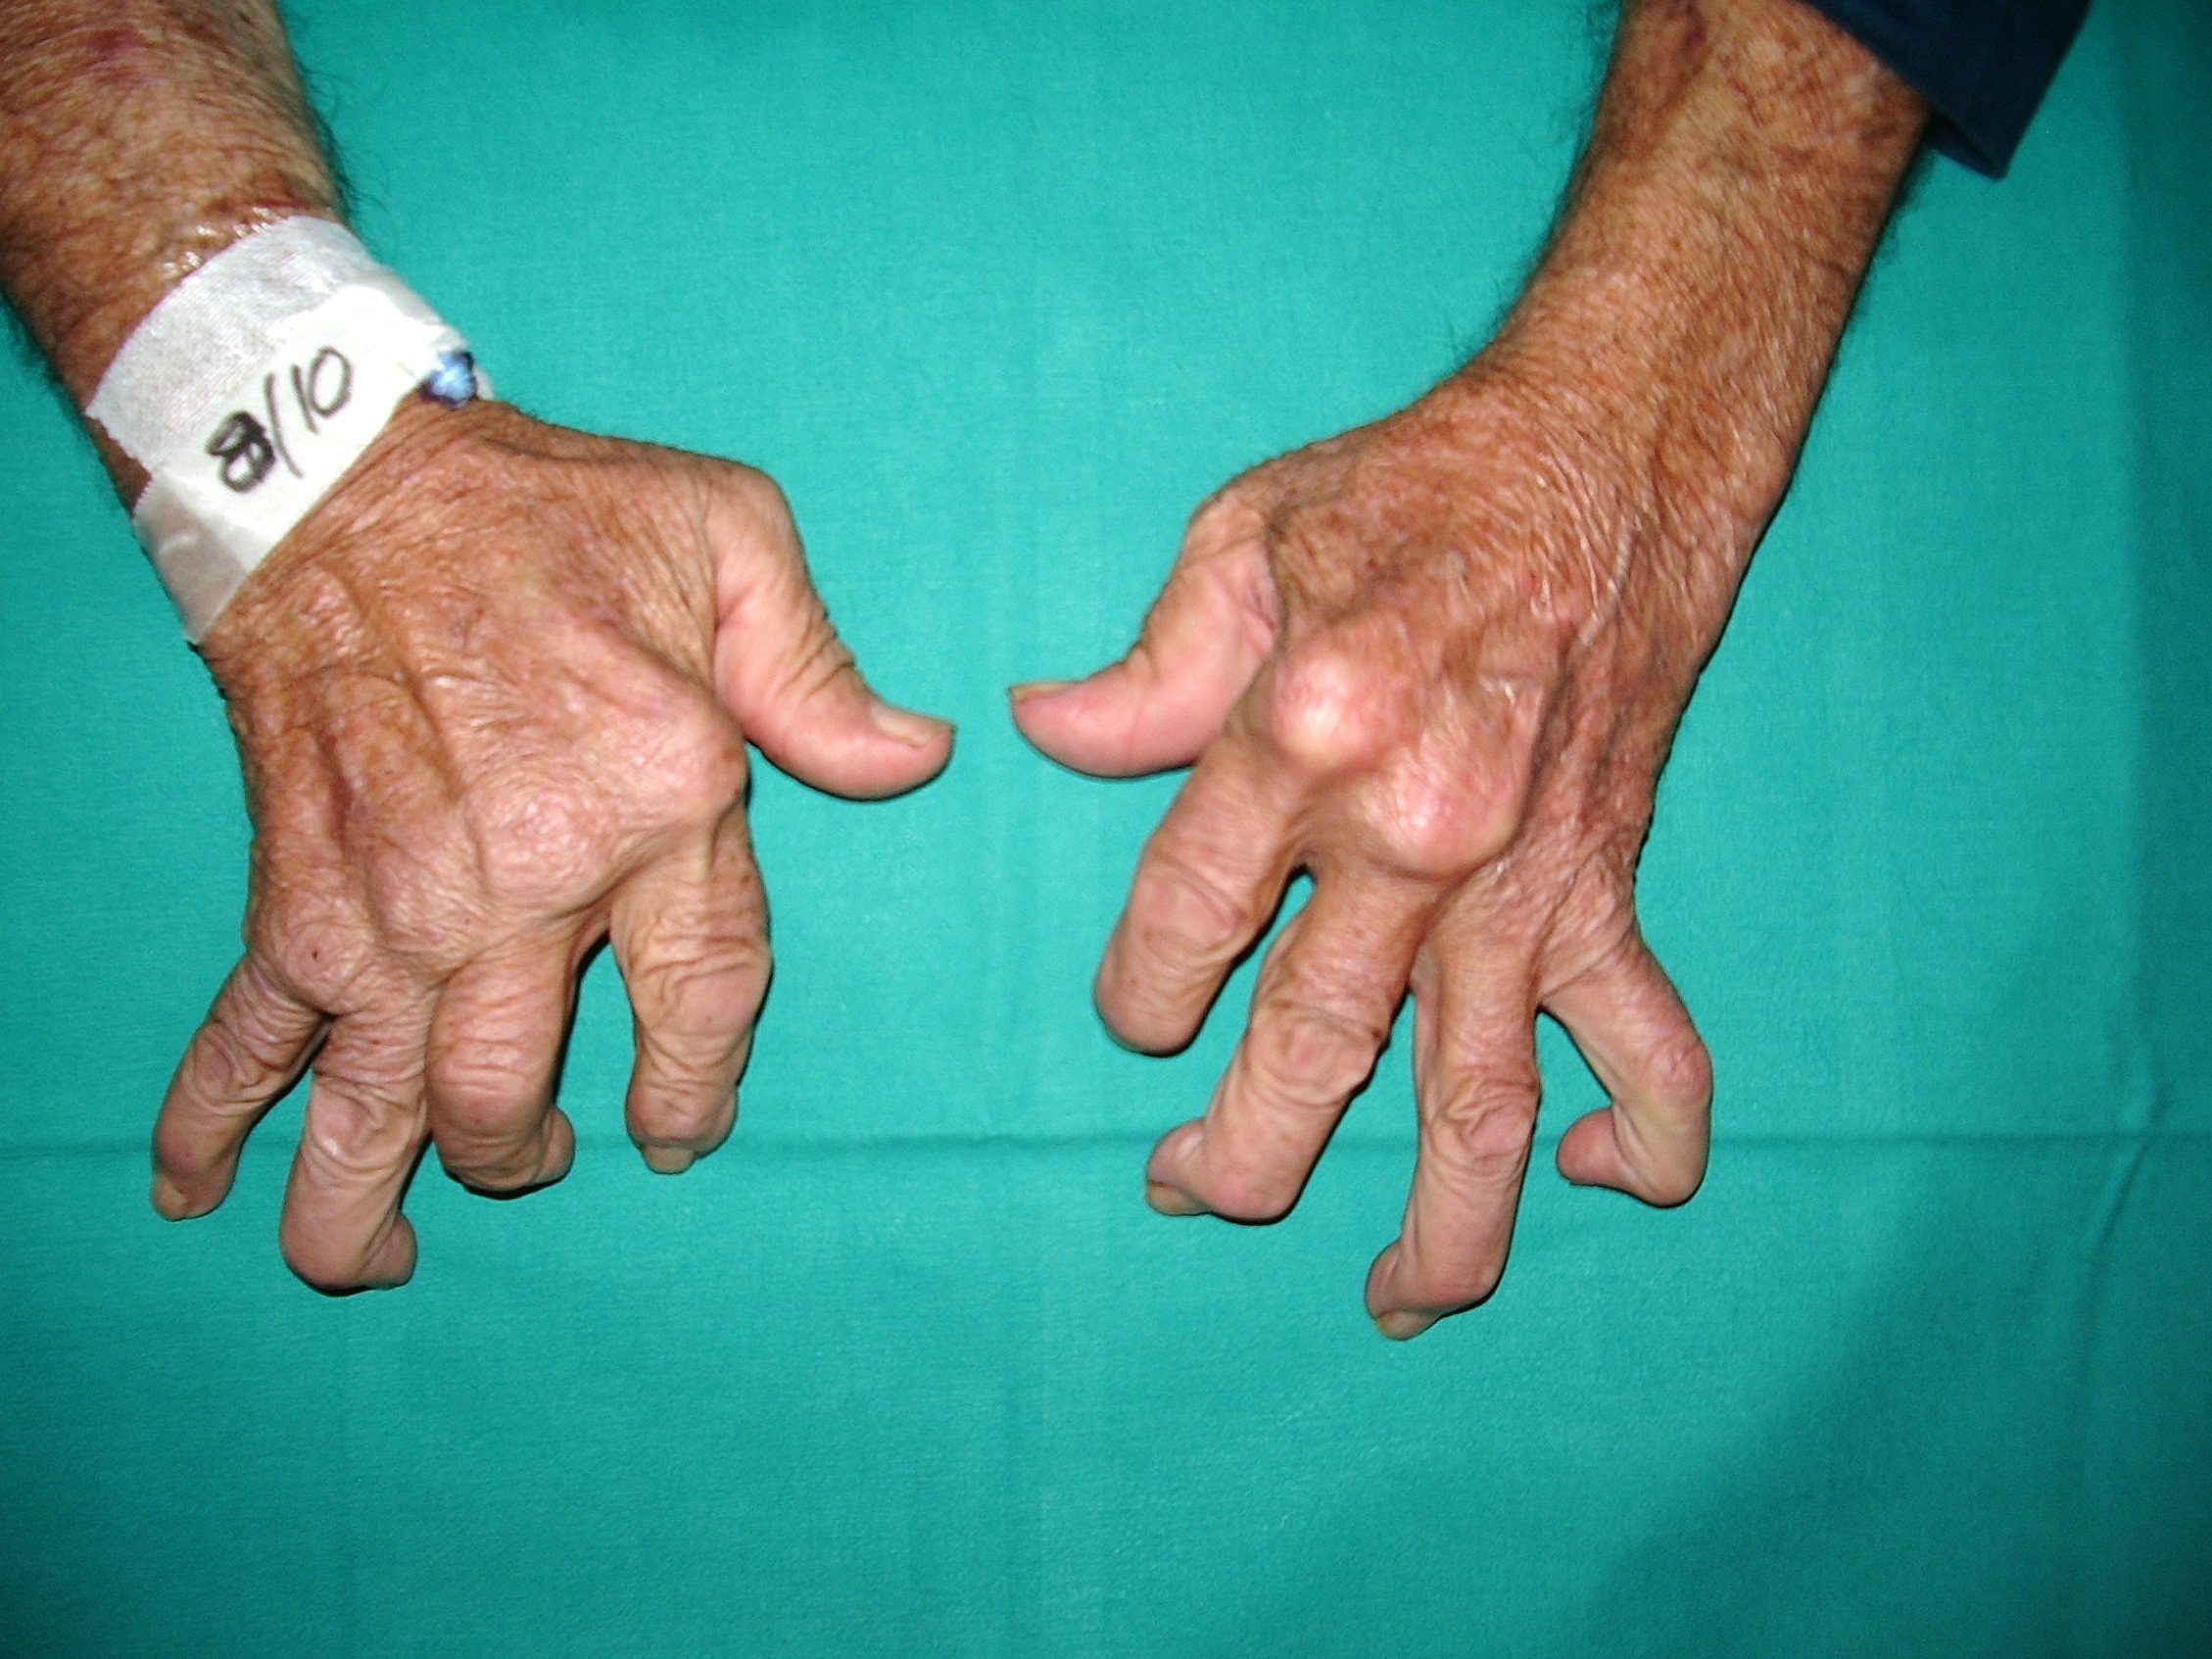 Revolutionary Arthritis Treatment: An End To Chronic Pain